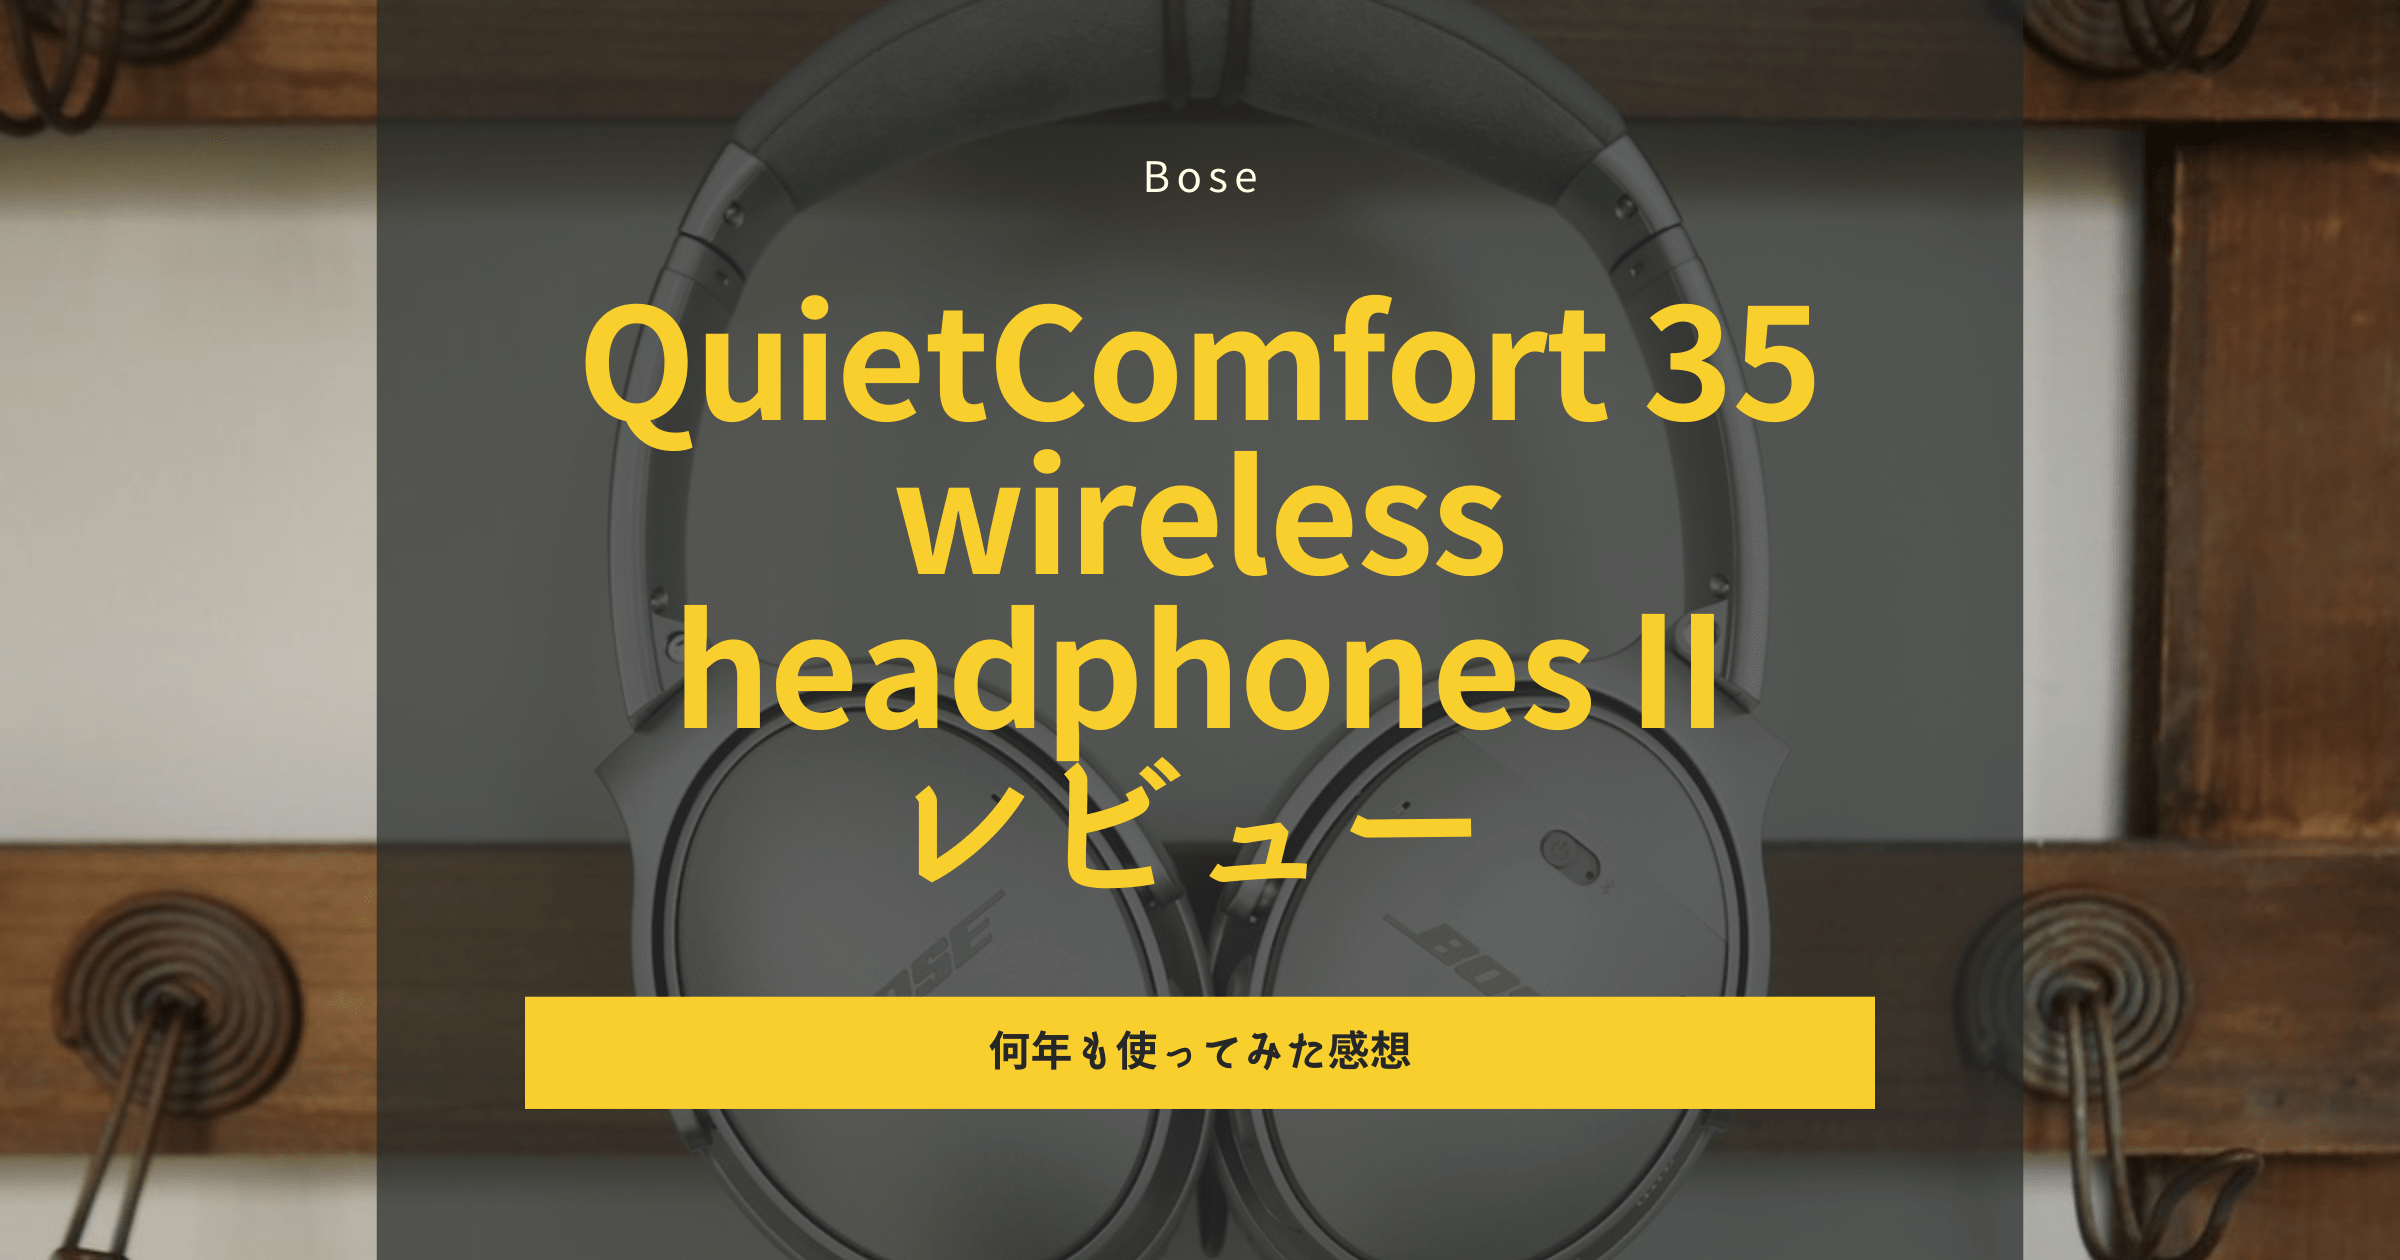 Bose QuietComfort 35 wireless headphones II レビュー｜何年も使ってみた感想